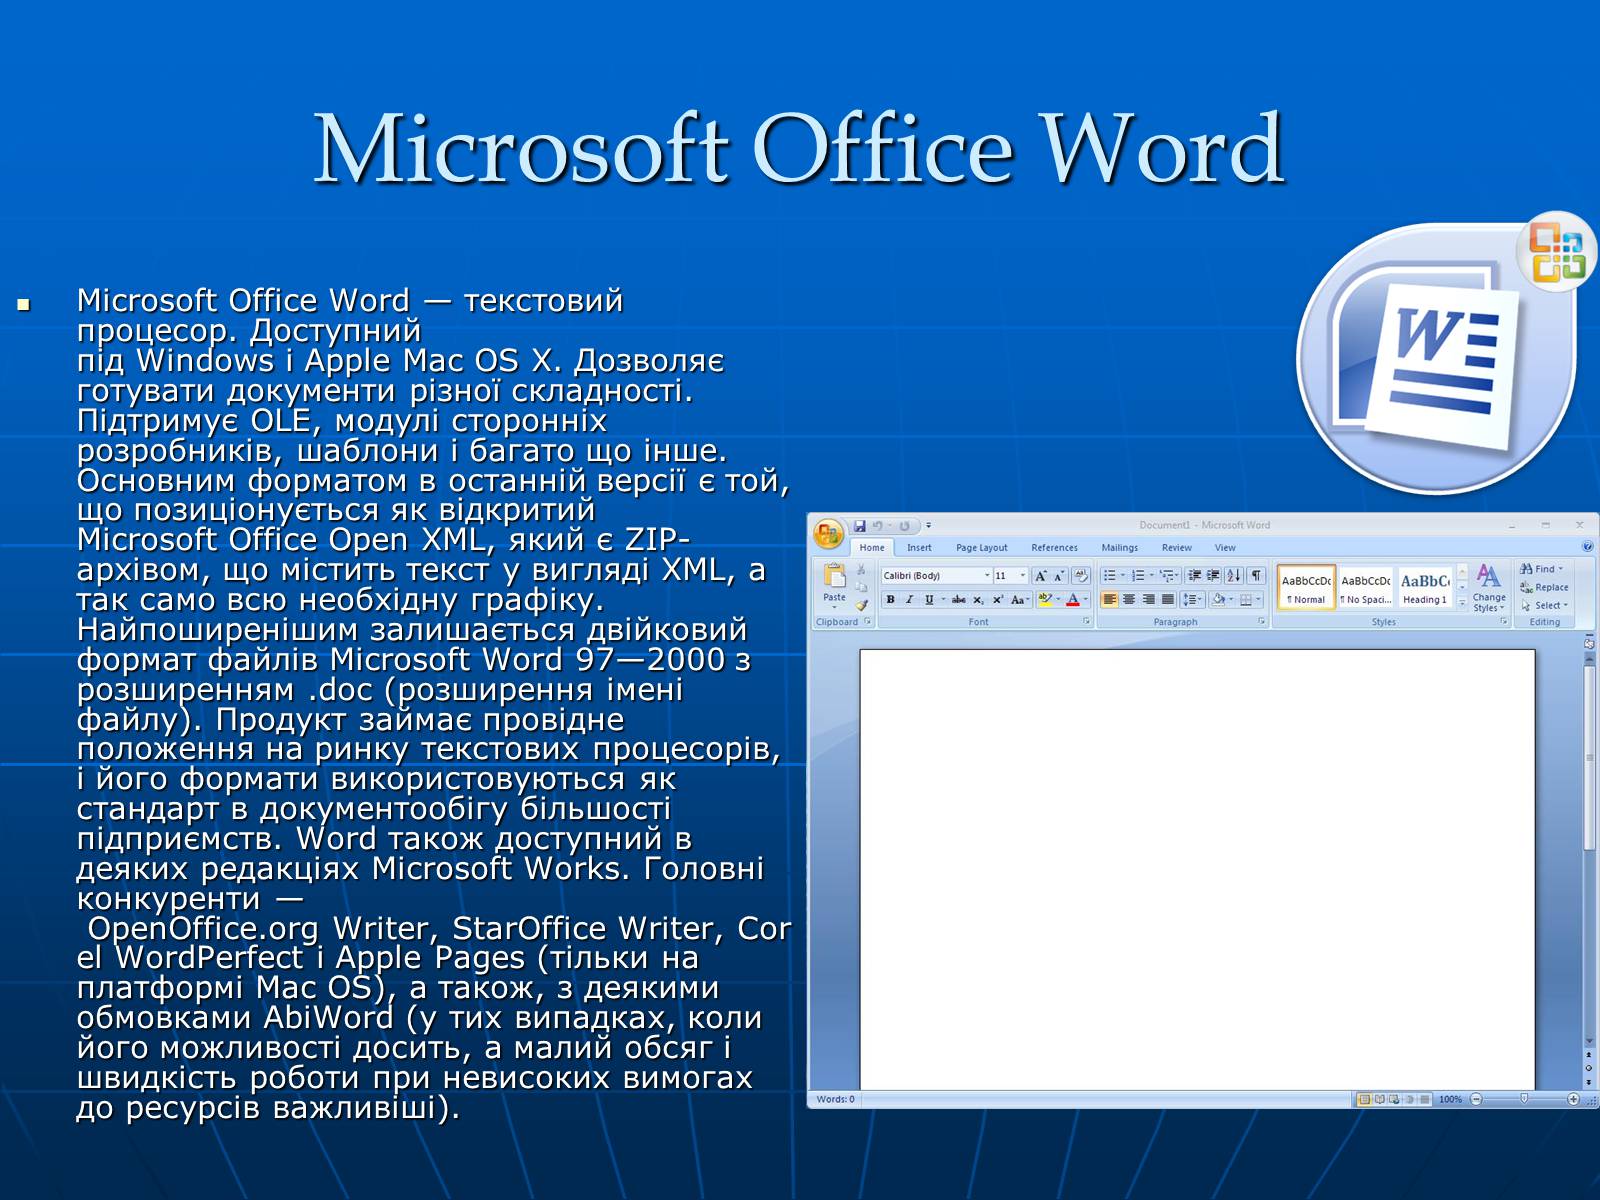 Office word can. Текстовый процессор МС ворд. Текстовый редактор Microsoft Office Word. Текстовый процессор Microsoft Office Word. Текстовый процессор Word 2010.